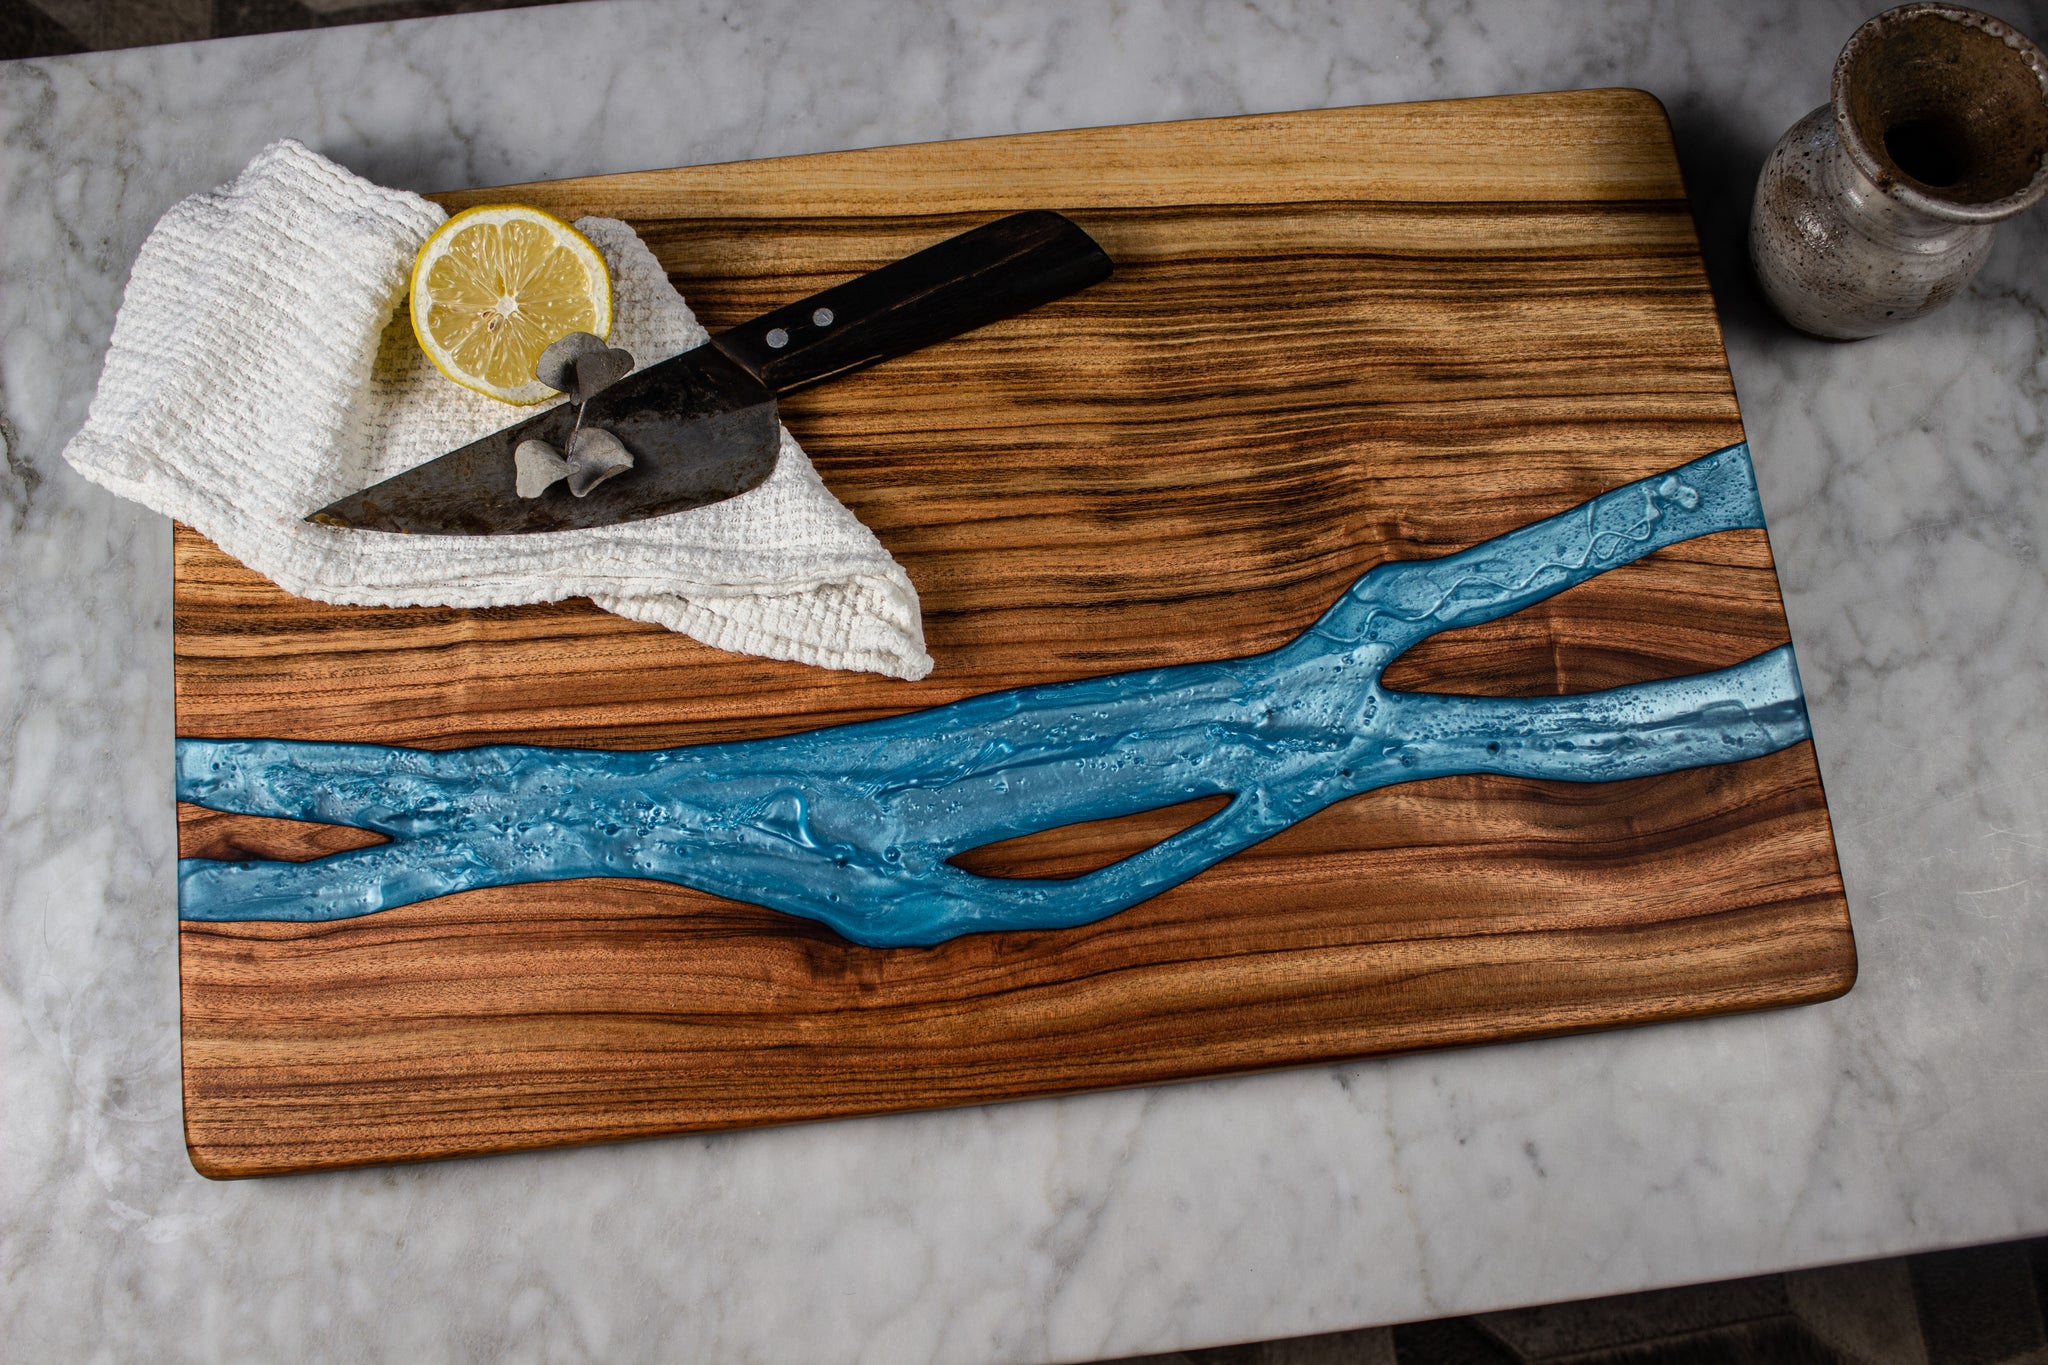 Oak & Blue water resin cutting board —